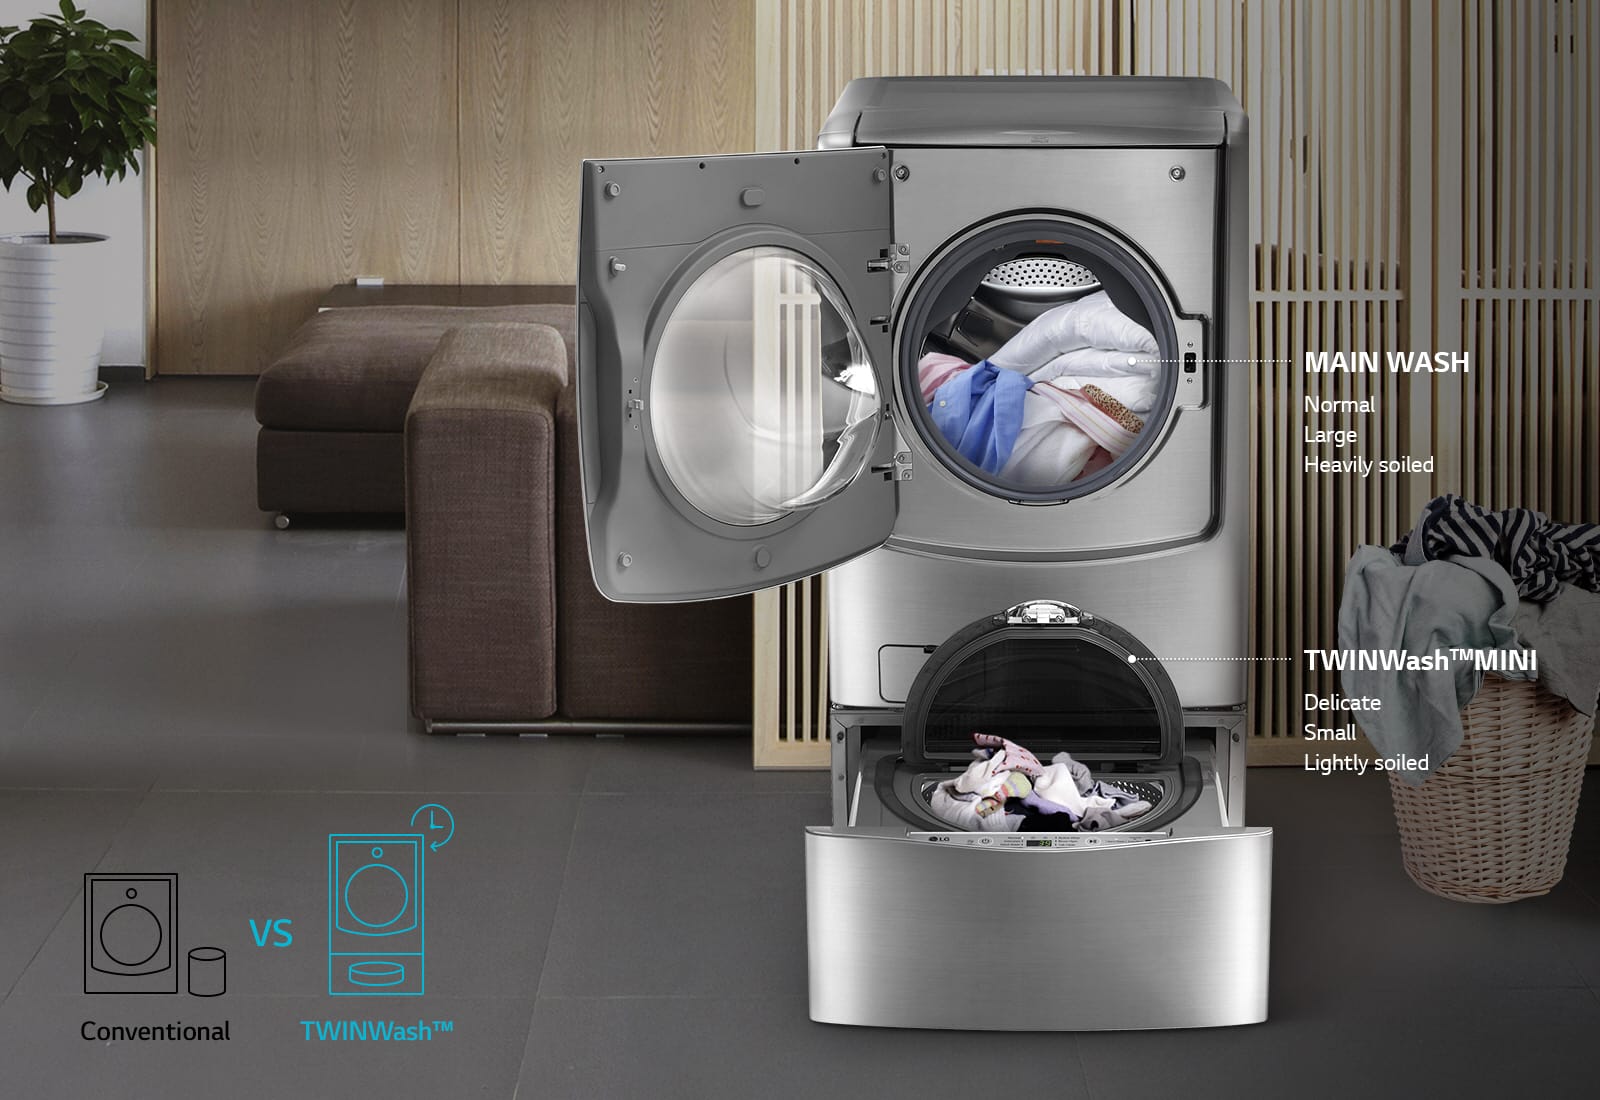 รีวิว LG TWIN Wash™ เครื่องซักผ้าสุดแปลก ซักผ้า 2 ถังได้ในครั้งเดียว!